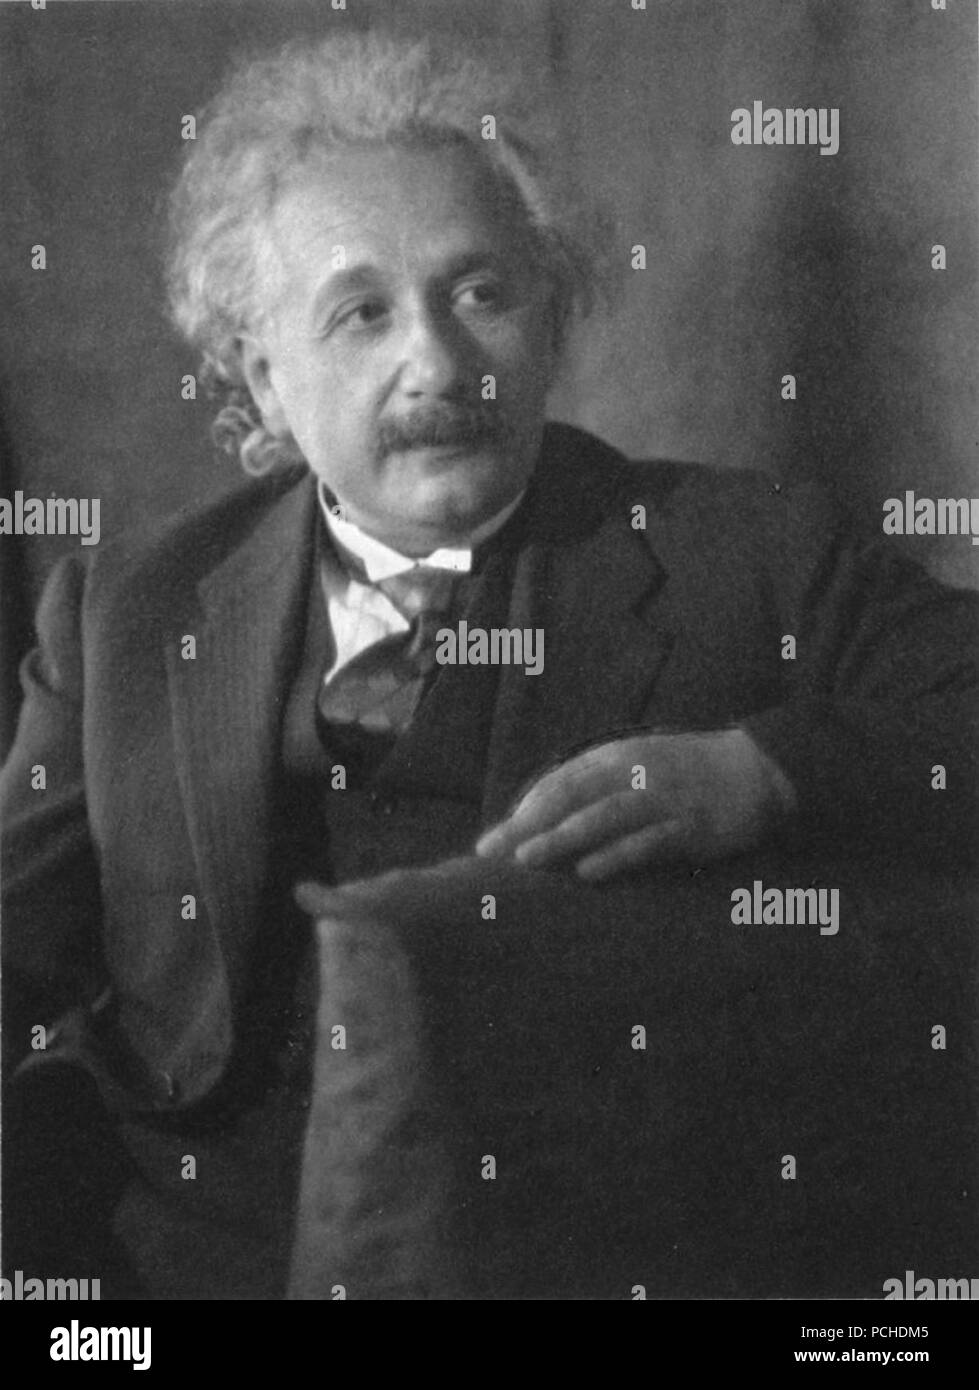 Albert Einstein, by Doris Ulmann. Stock Photo